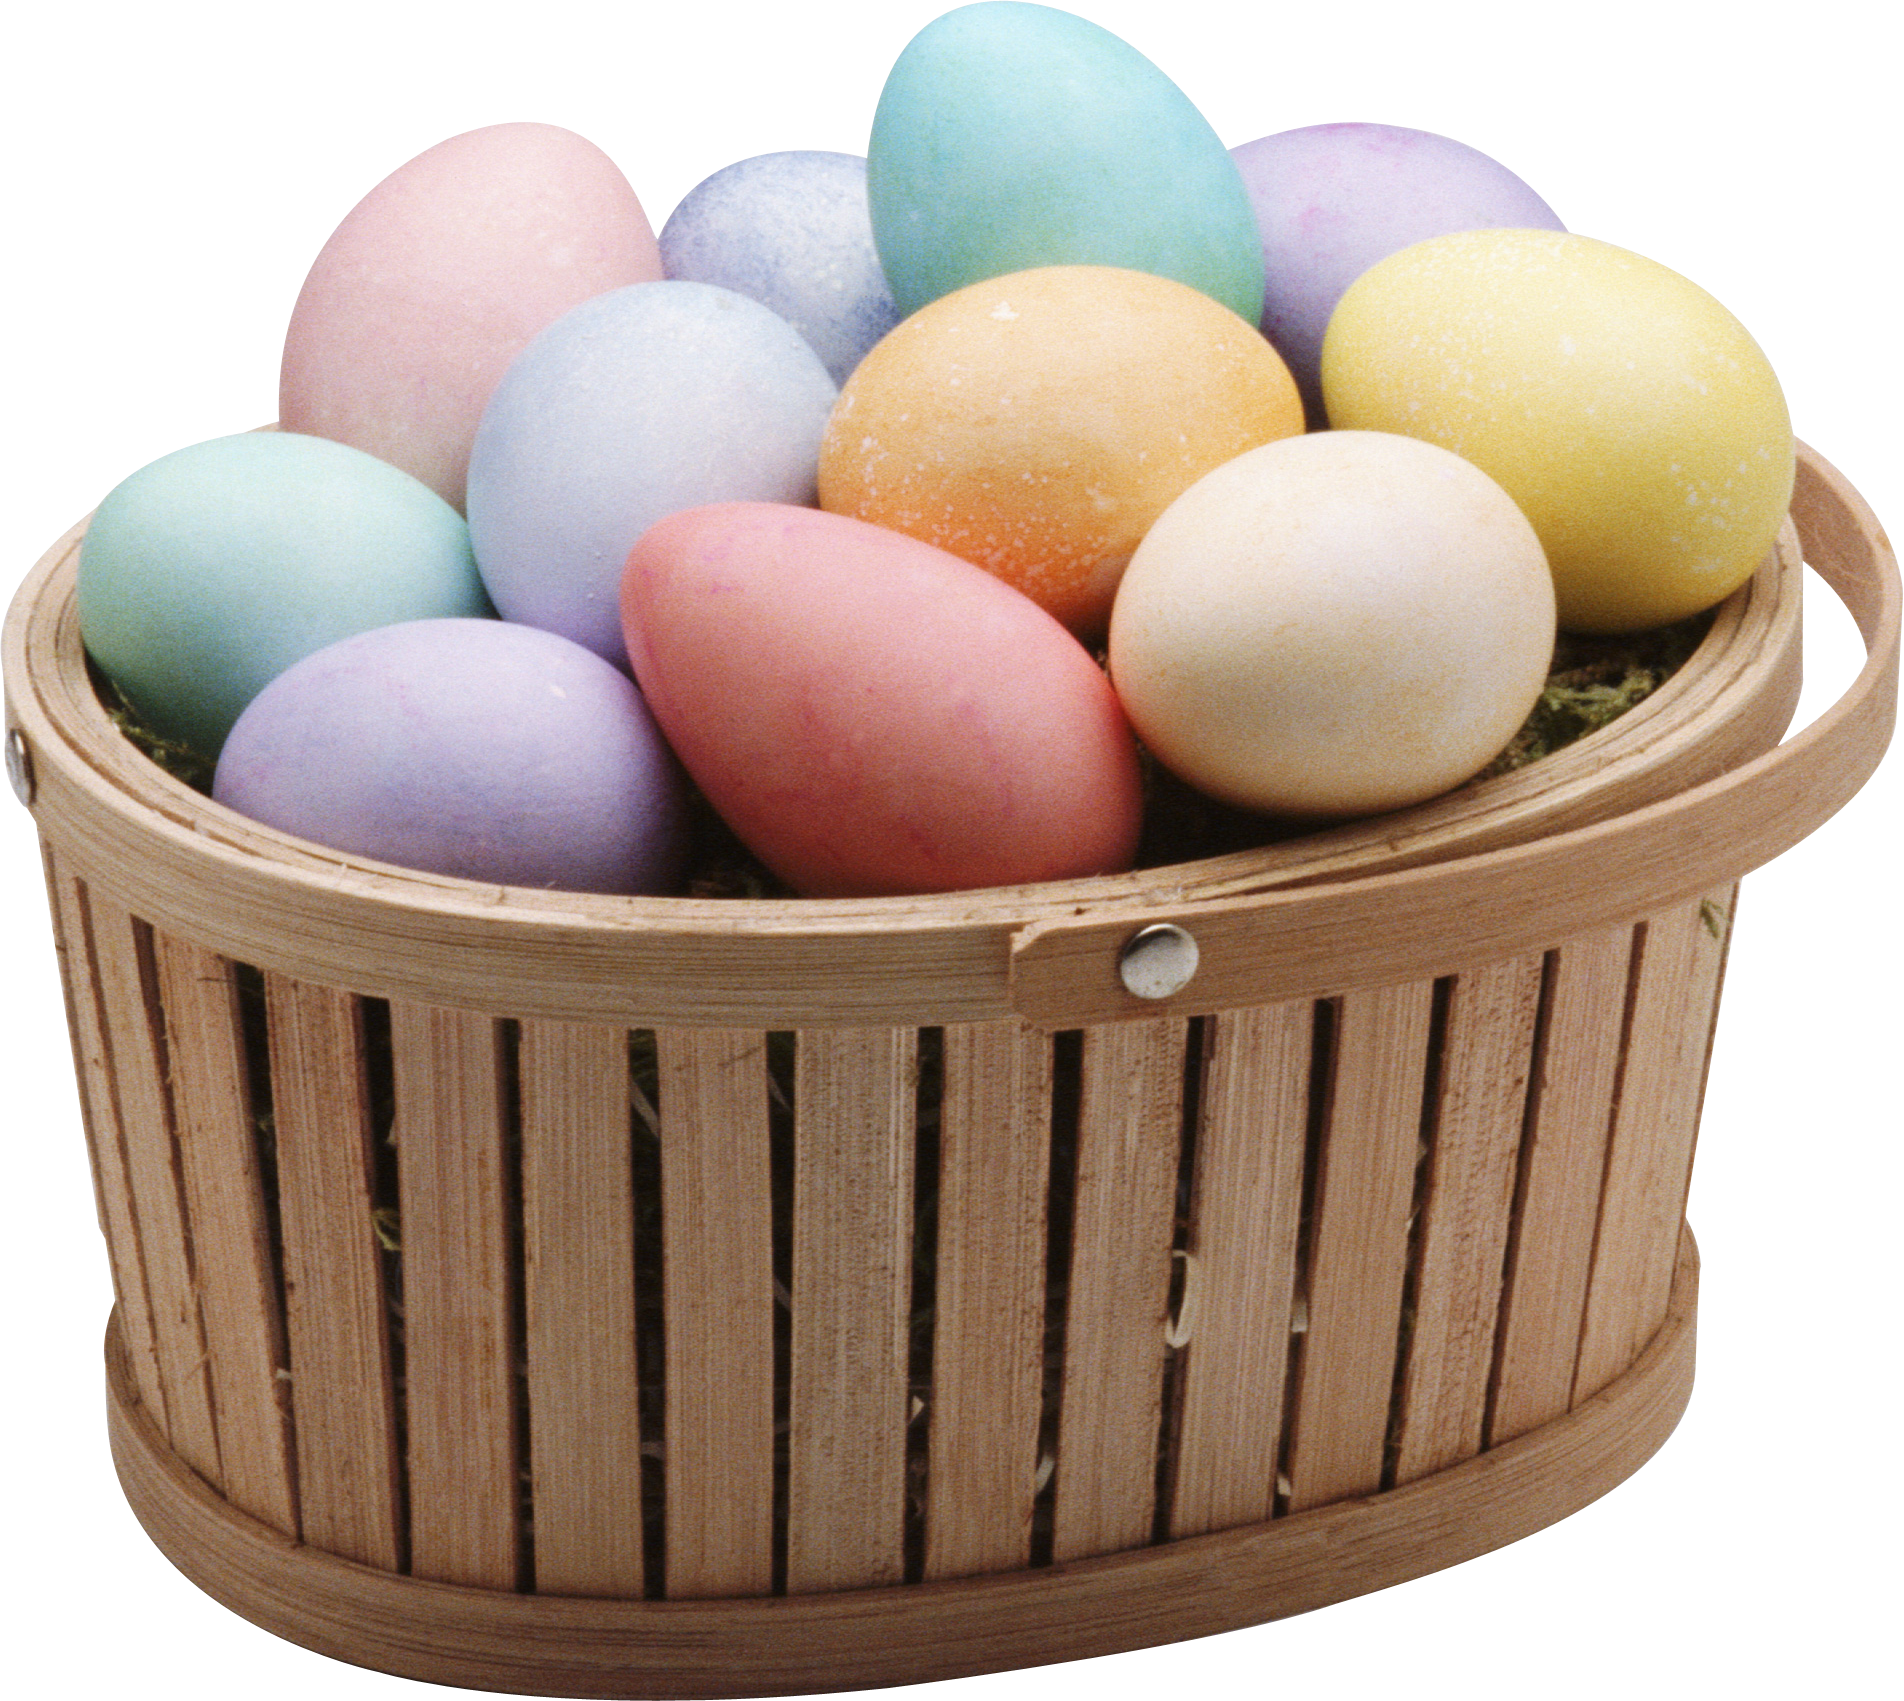 Sepet içinde renkli yumurtalar